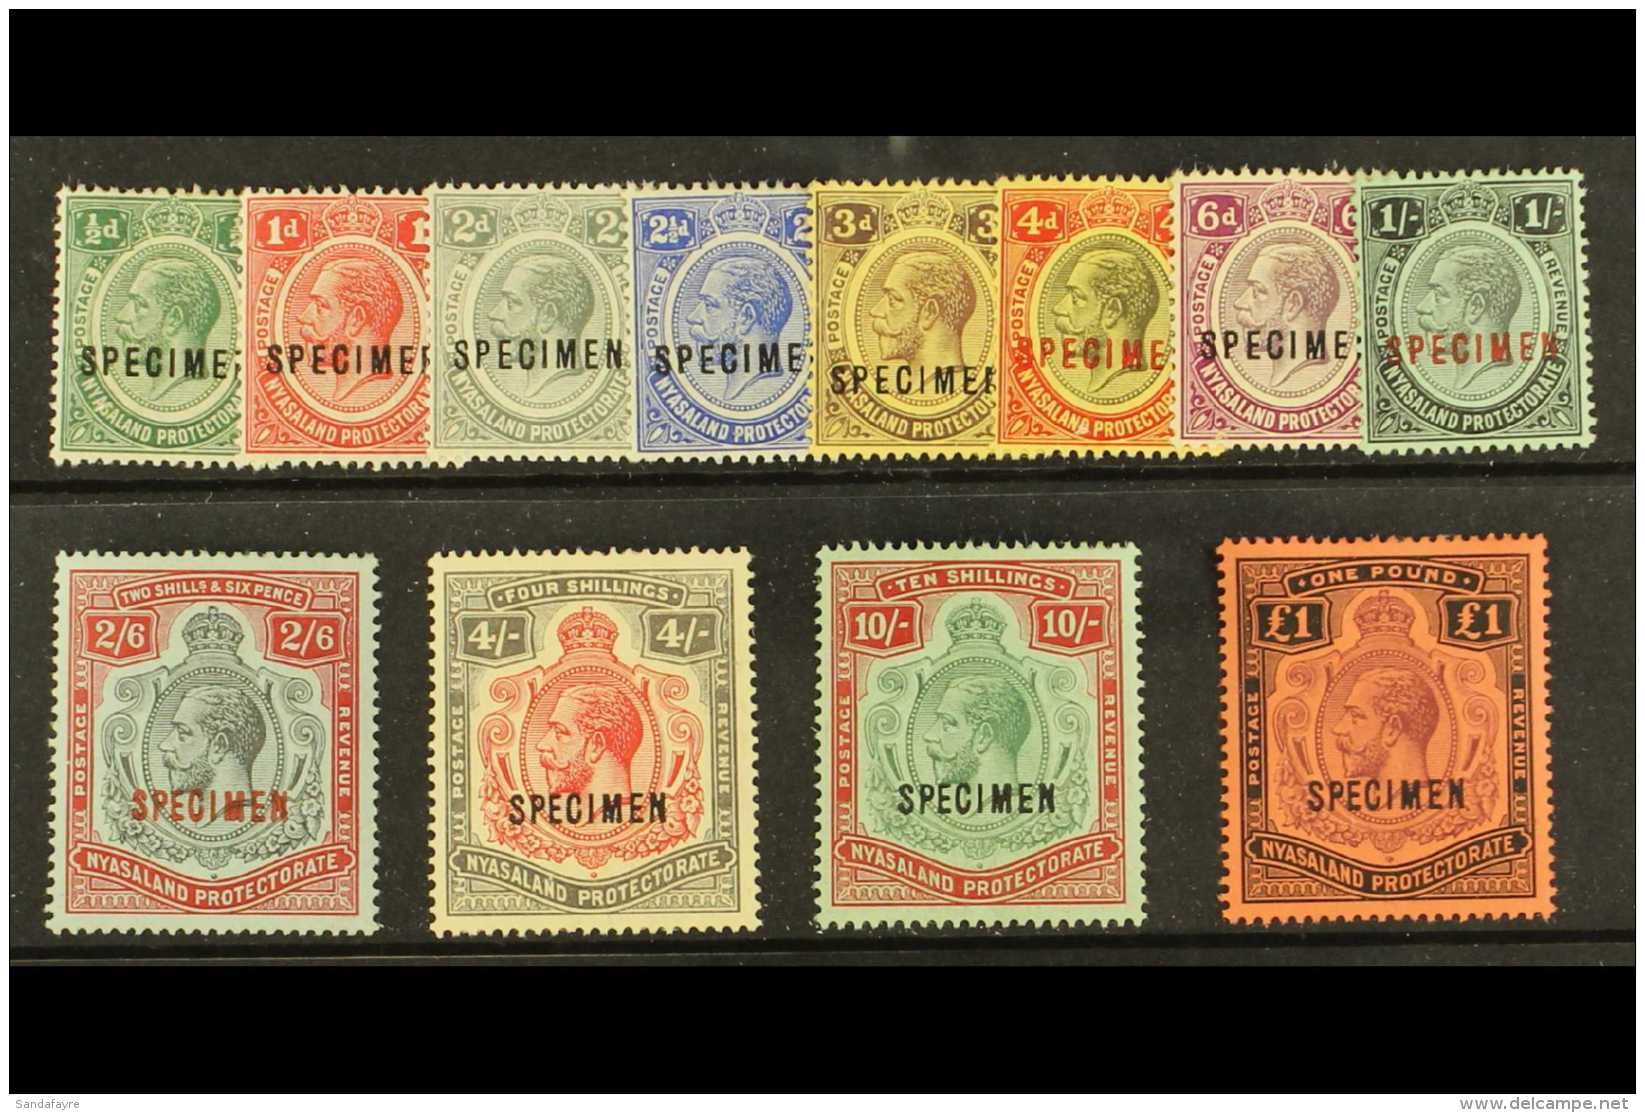 1913 Geo V Set, Wmk MCA, Overprinted "Specimen", SG 83s/98s, Very Fine Mint, Large Part Og. Scarce Set. (12... - Nyasaland (1907-1953)